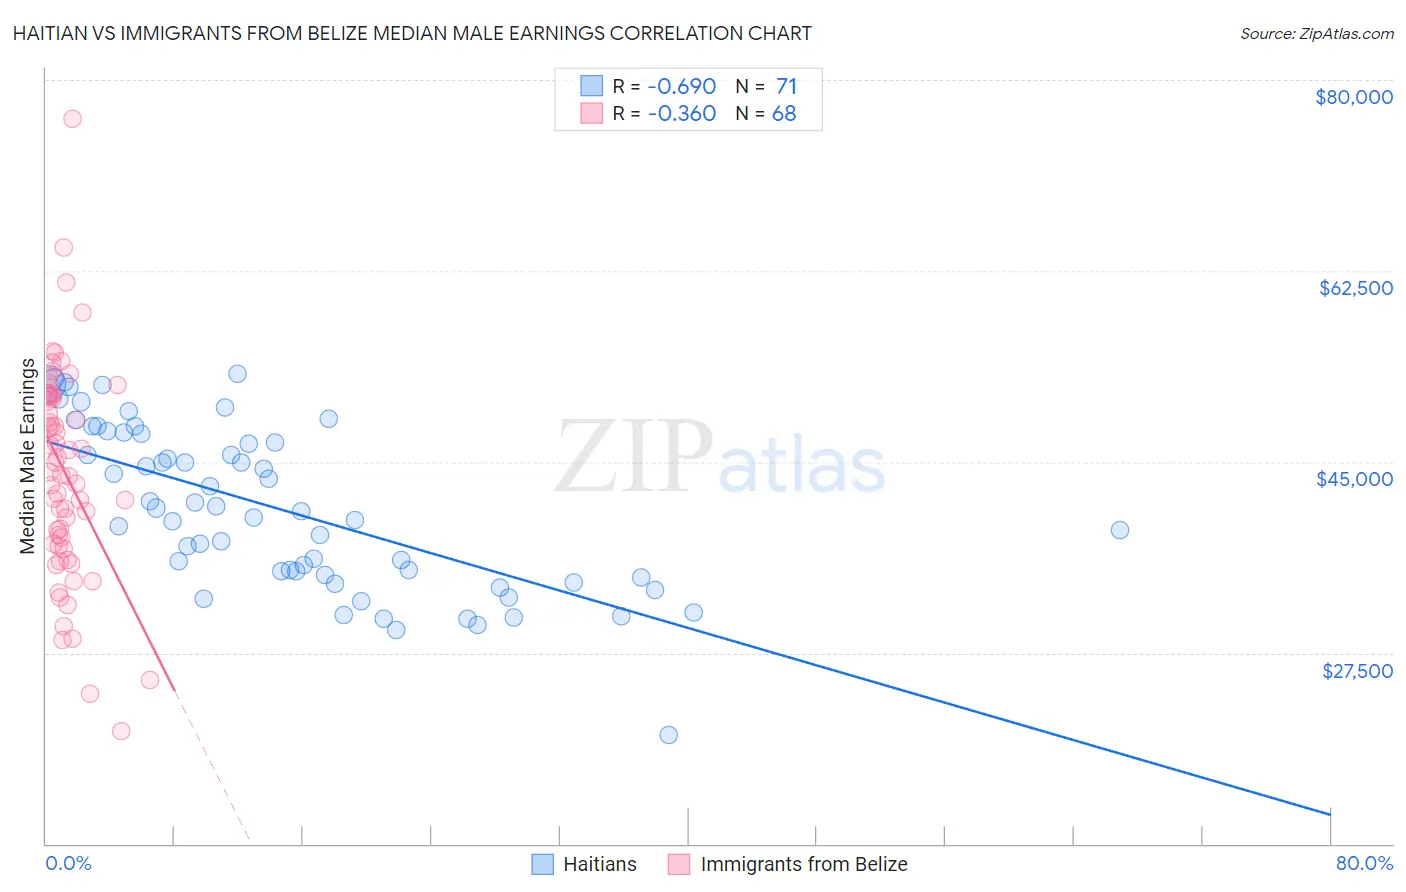 Haitian vs Immigrants from Belize Median Male Earnings